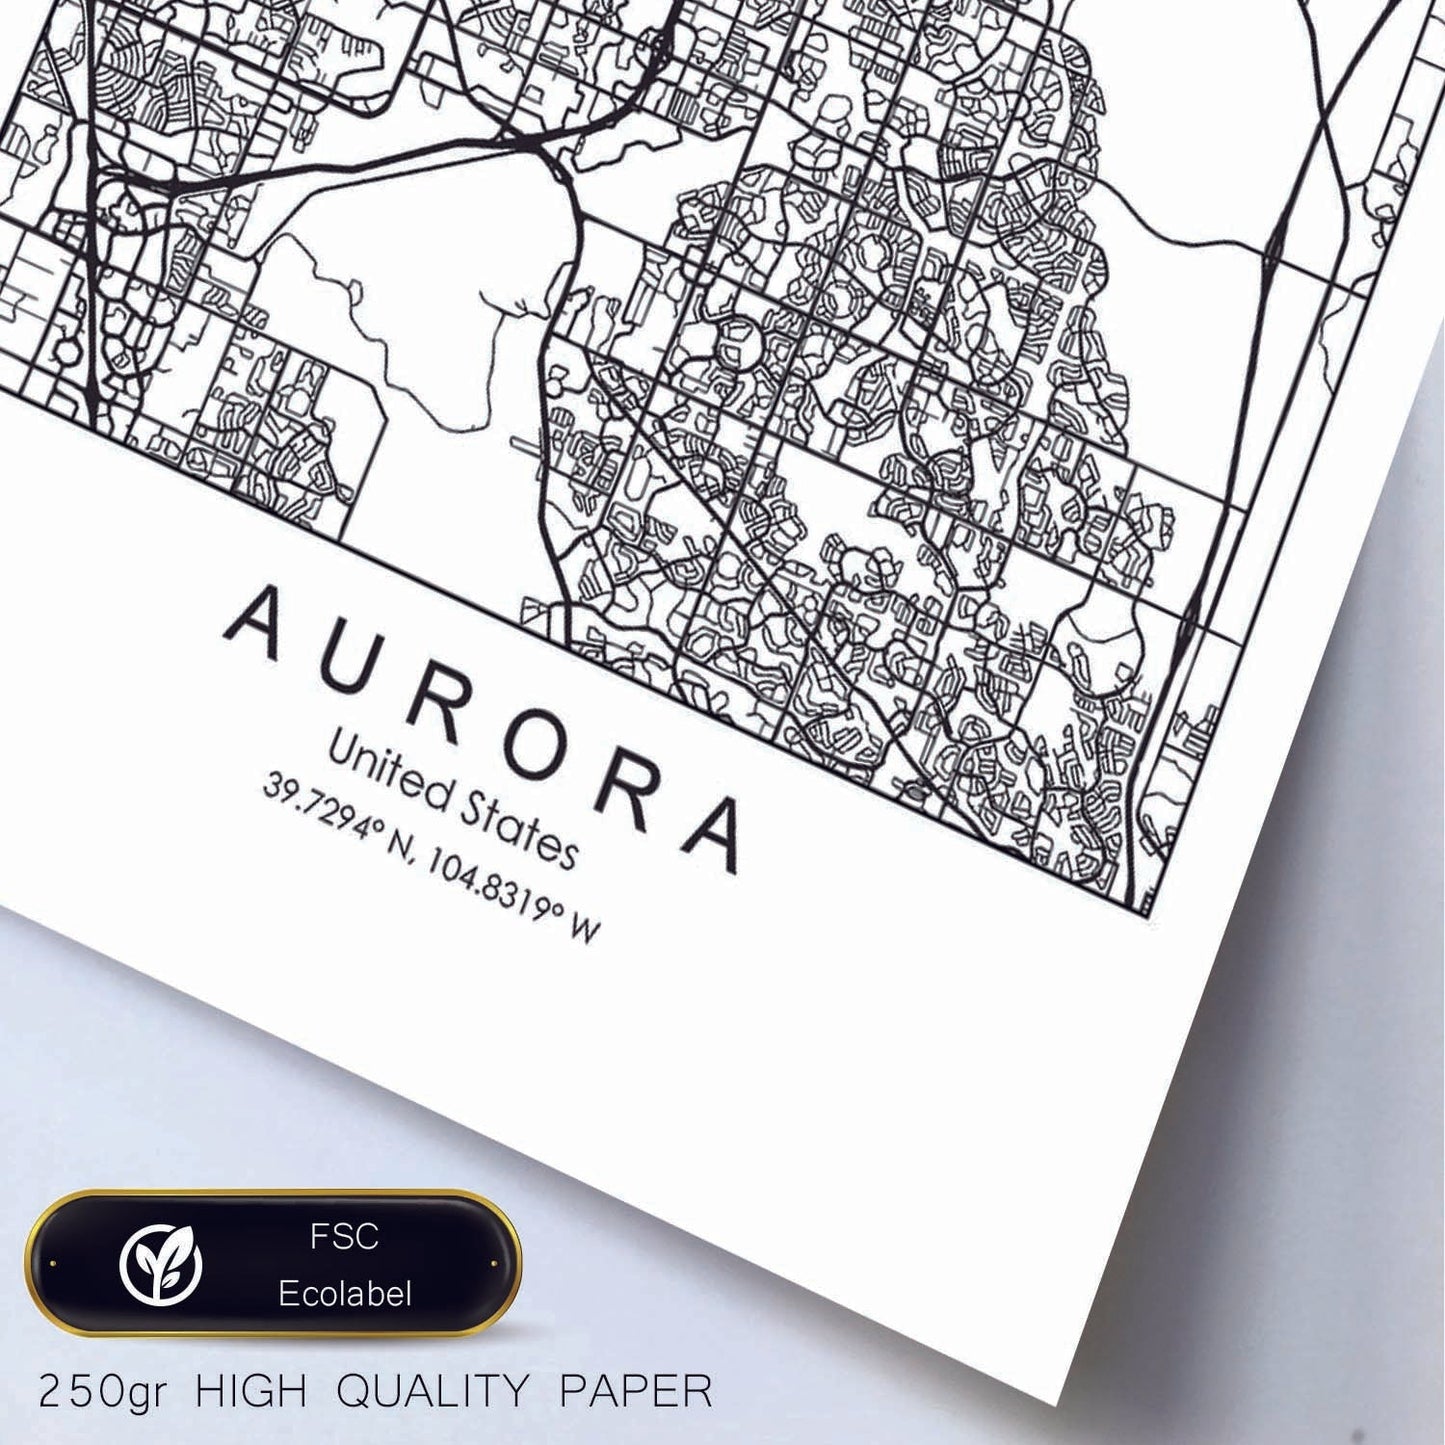 Poster con mapa de Aurora. Lámina de Estados Unidos, con imágenes de mapas y carreteras-Artwork-Nacnic-Nacnic Estudio SL